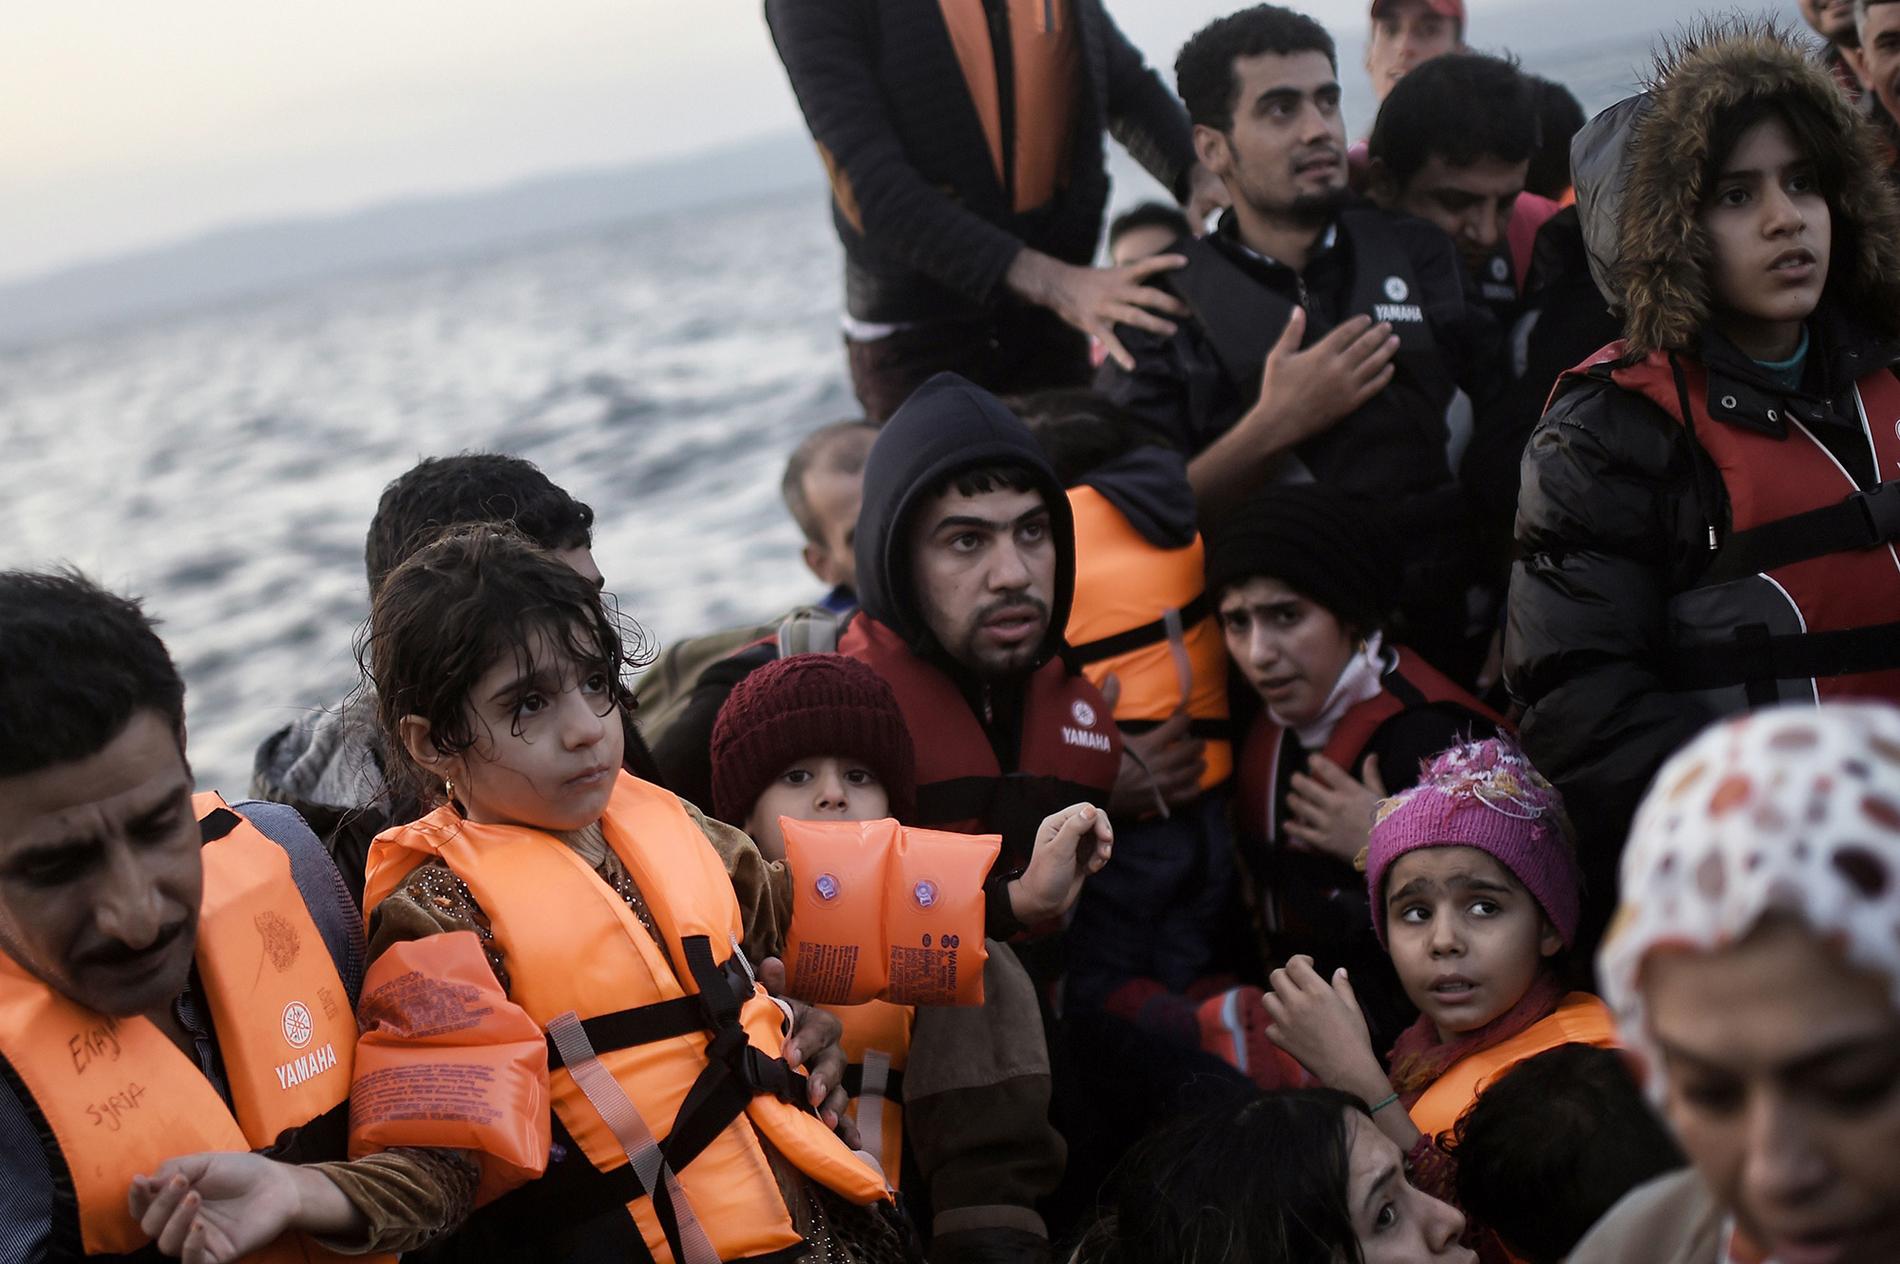 Tusentals flyktingar anländer via båt till de grekiska öarna varje dag. Den här båten kom över Egeiska havet till Lesbos 8 oktober.